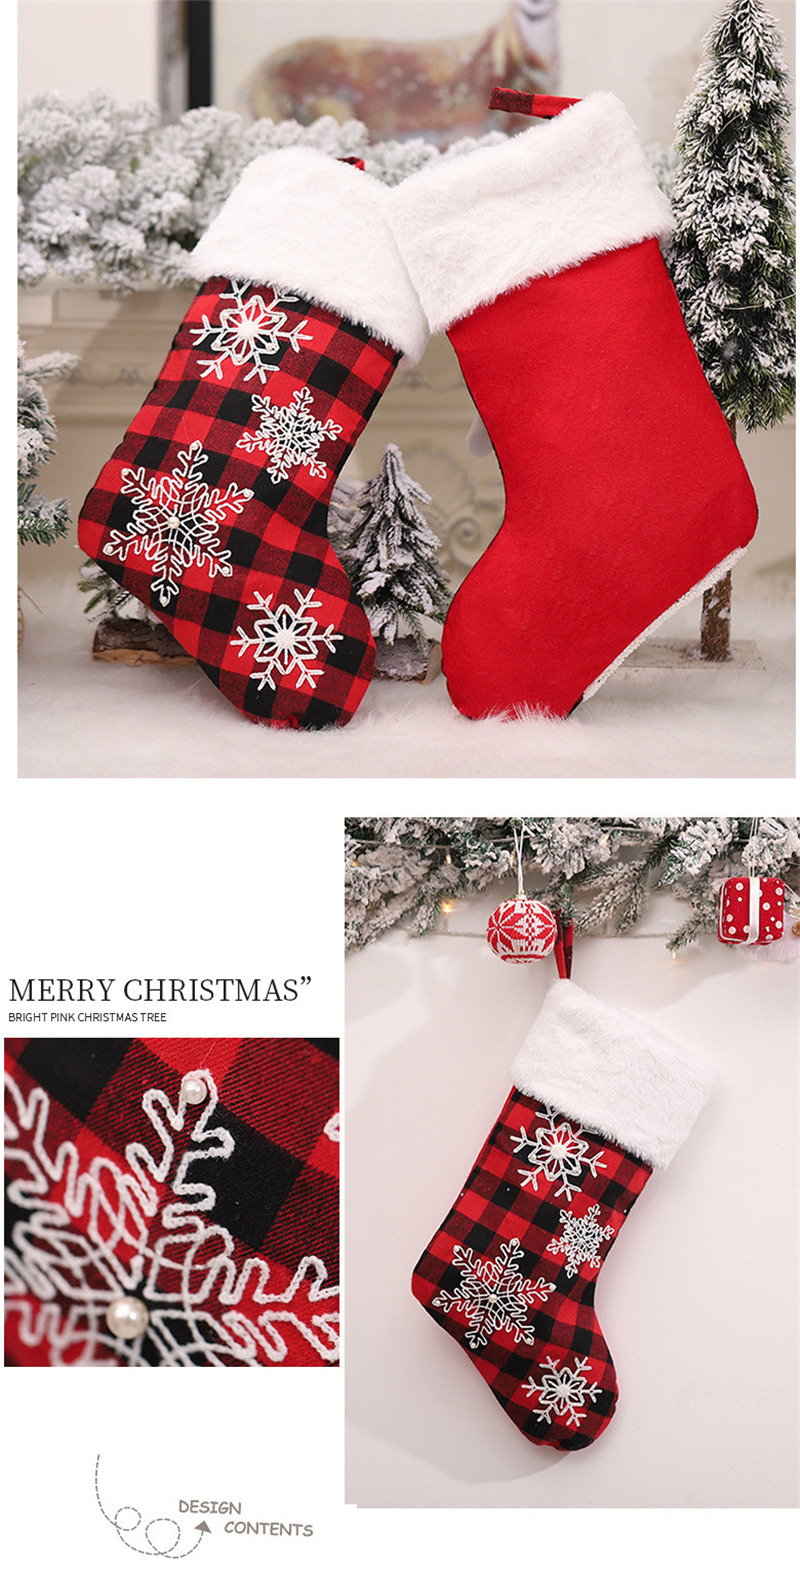 red black plaid christmas stockings xmas decoration